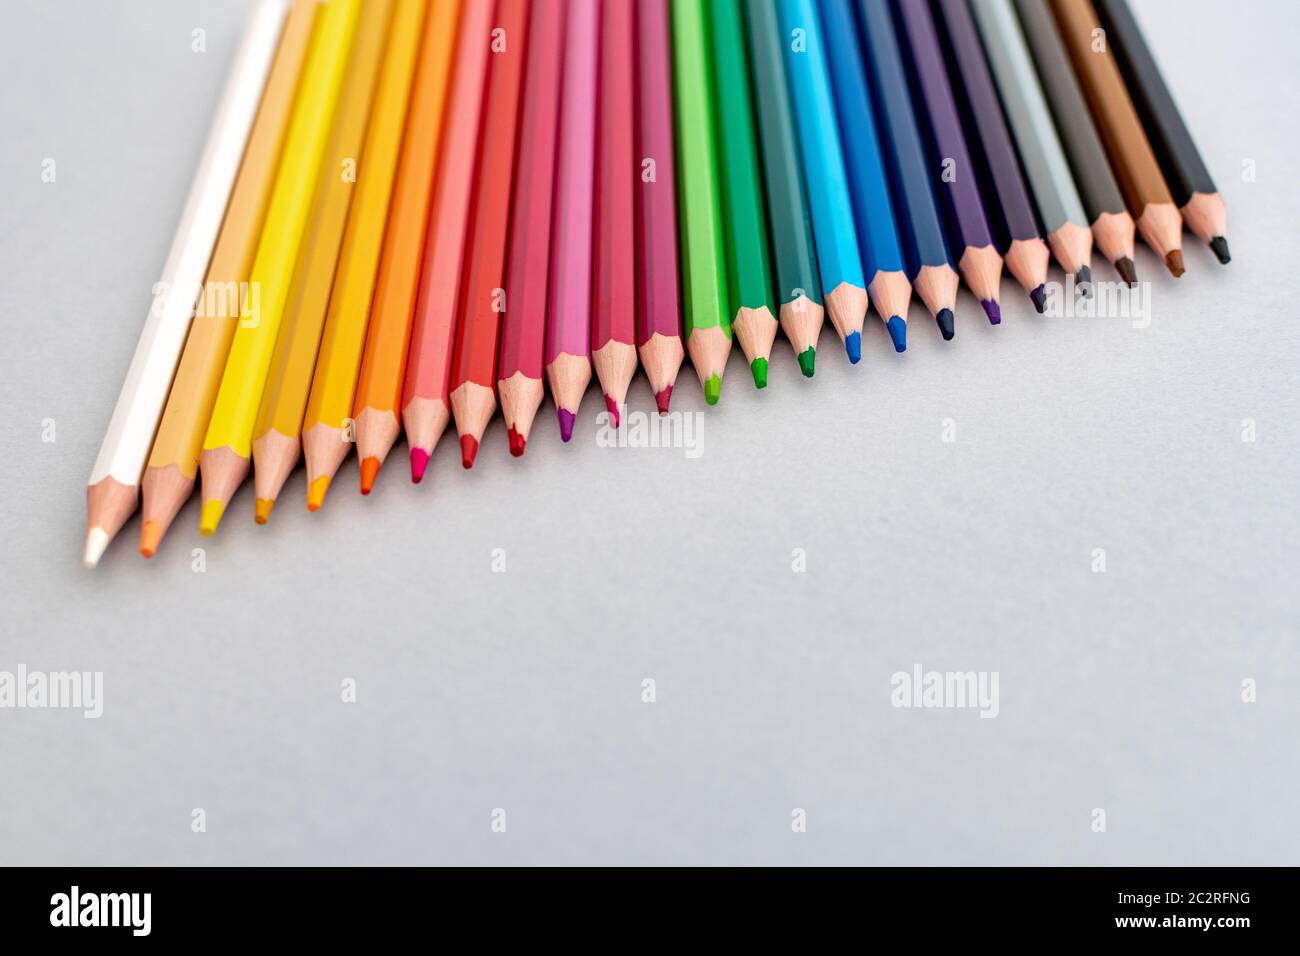 Eine Auswahl von Farbstiften, die in einer diagonalen Linie von weiß bis schwarz platziert sind Stockfoto